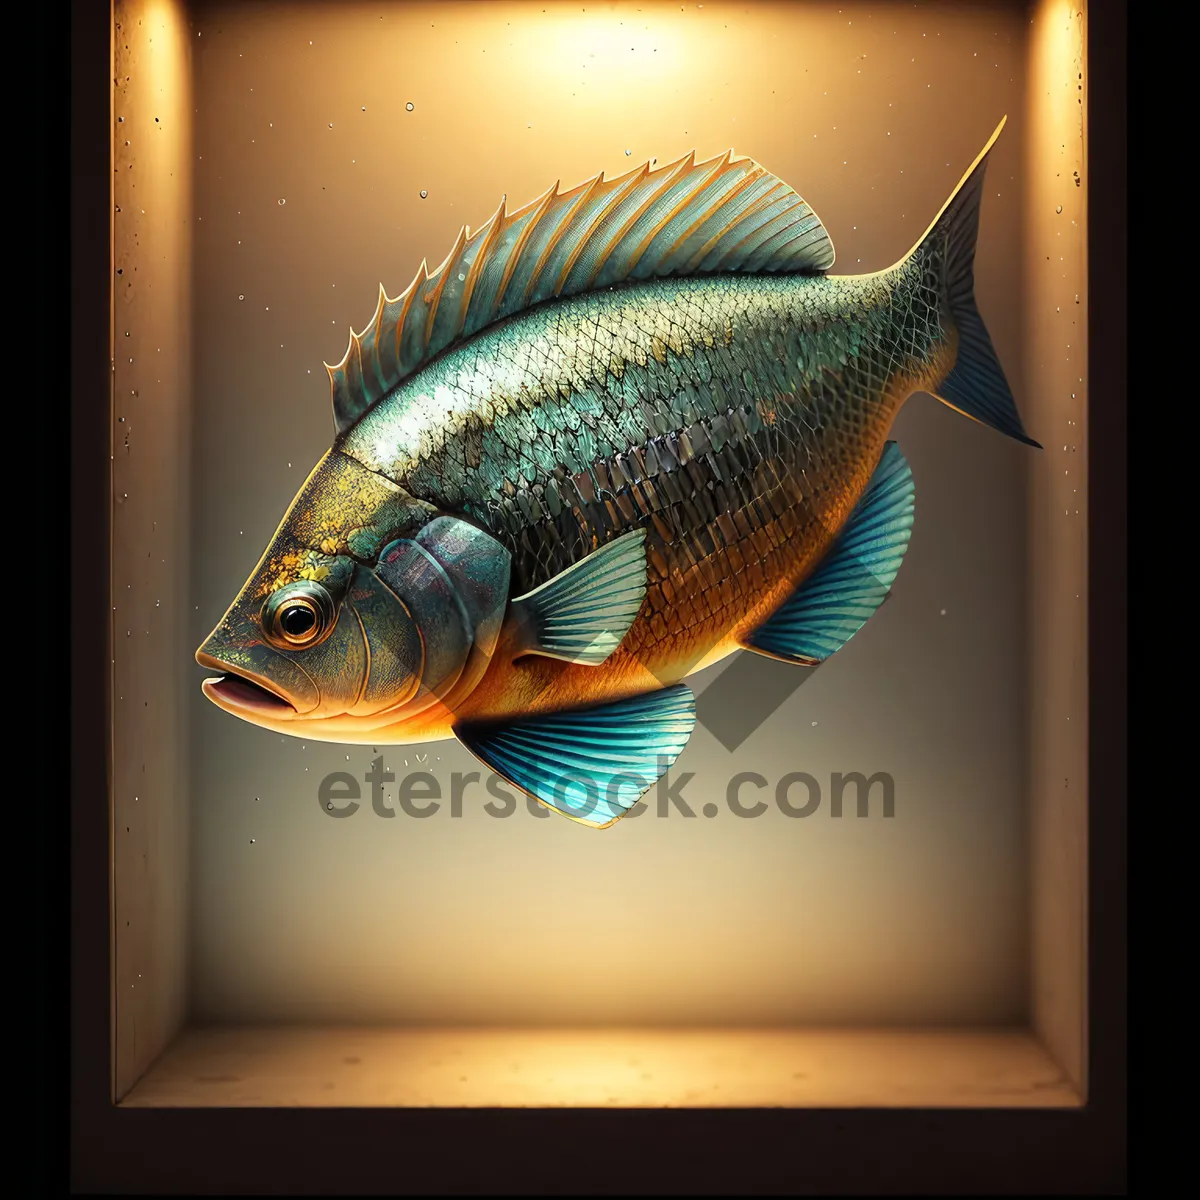 Picture of Tropical Fish in Underwater Aquarium Tank